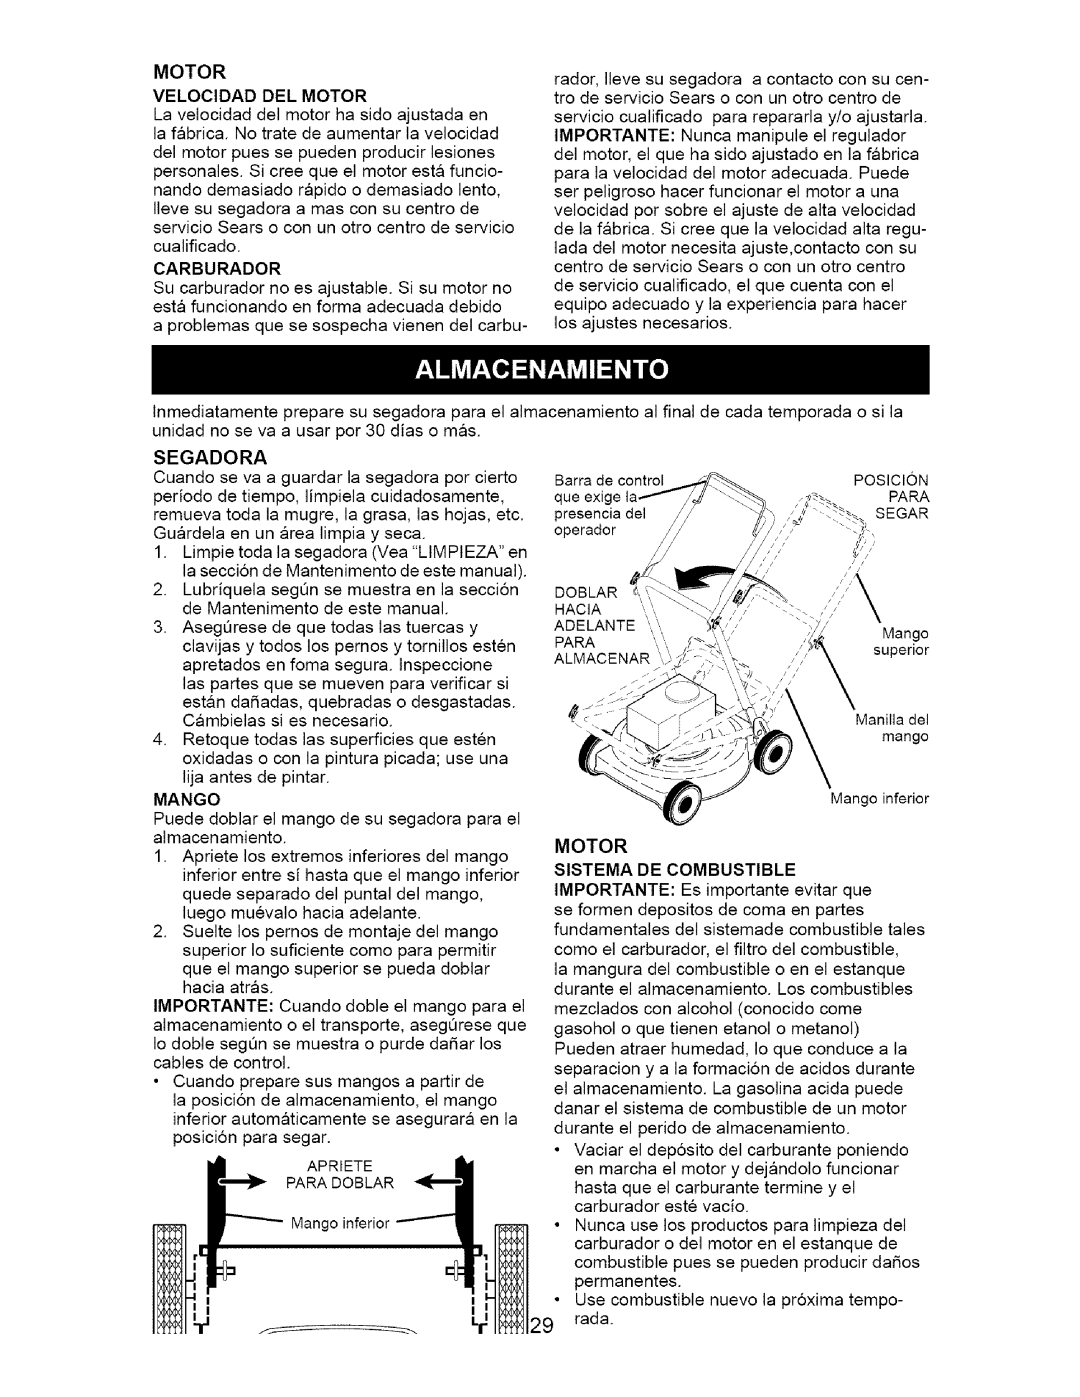 Craftsman 917.385124 owner manual Mango, Motor Sistema De Combustible, IMPORTANTE: Es importante evitar que 